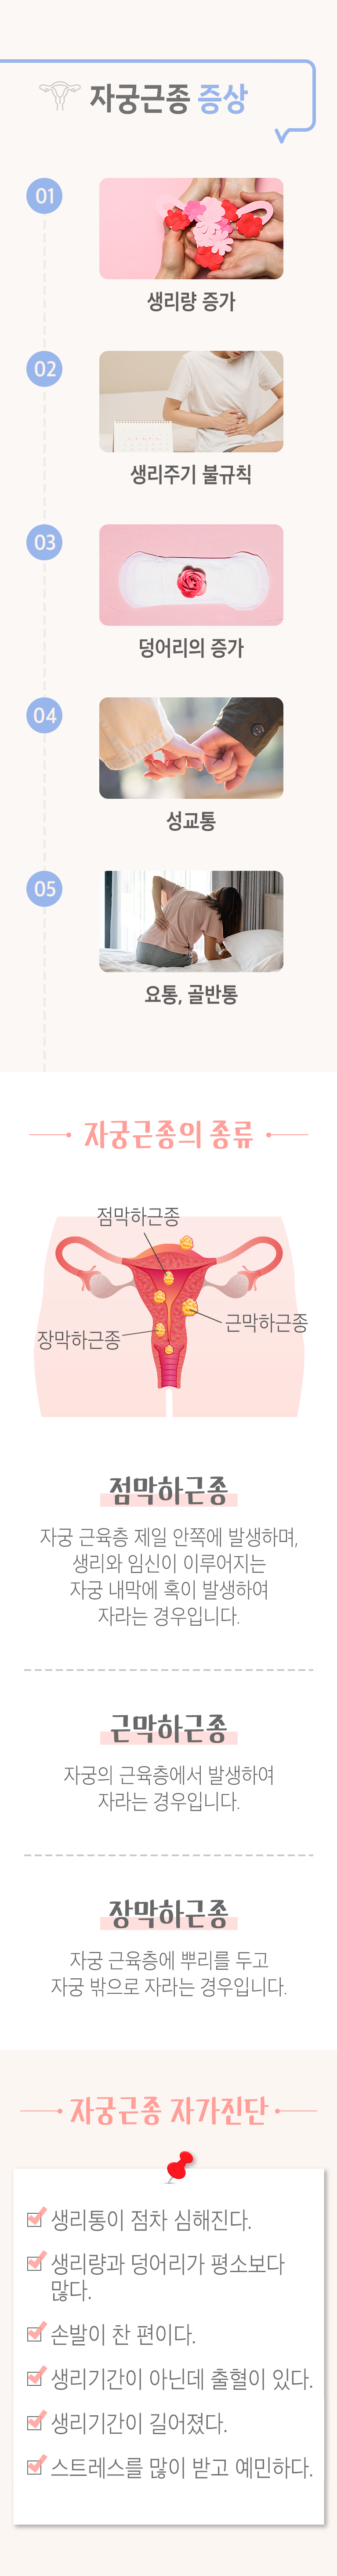 자궁근종 증상 ▷ 01 생리량 증가. 02 생리주기 불규칙. 03 덩어리의 증가. 04 성교통. 05 요반, 골반통. 자궁근종의 종류 ▷ 점막하 근종 - 자궁 근육층 제일 안쪽에 발생하며, 생리와 임신이 이루어지는 자궁 내막에 혹이 발생하여 자라는 경우입니다. 근막하근종 - 자궁의 근육층에서 발생하여 자라는 경우입니다. 장막하근중 - 자궁 근육층에 뿌리를 두고 자궁 밖으로 자라는 경우입니다. 자궁근종 자가진단 ▶ □ 생리통이 점차 심해진다. □ 생리량과 덩어리가 평소보다 많다. □ 손발이 찬 편이다. □ 생리기간이 아닌데 출혈이 있다. □ 생리기간이 길어졌다. □ 스트레스를 많이 받고 예민하다.